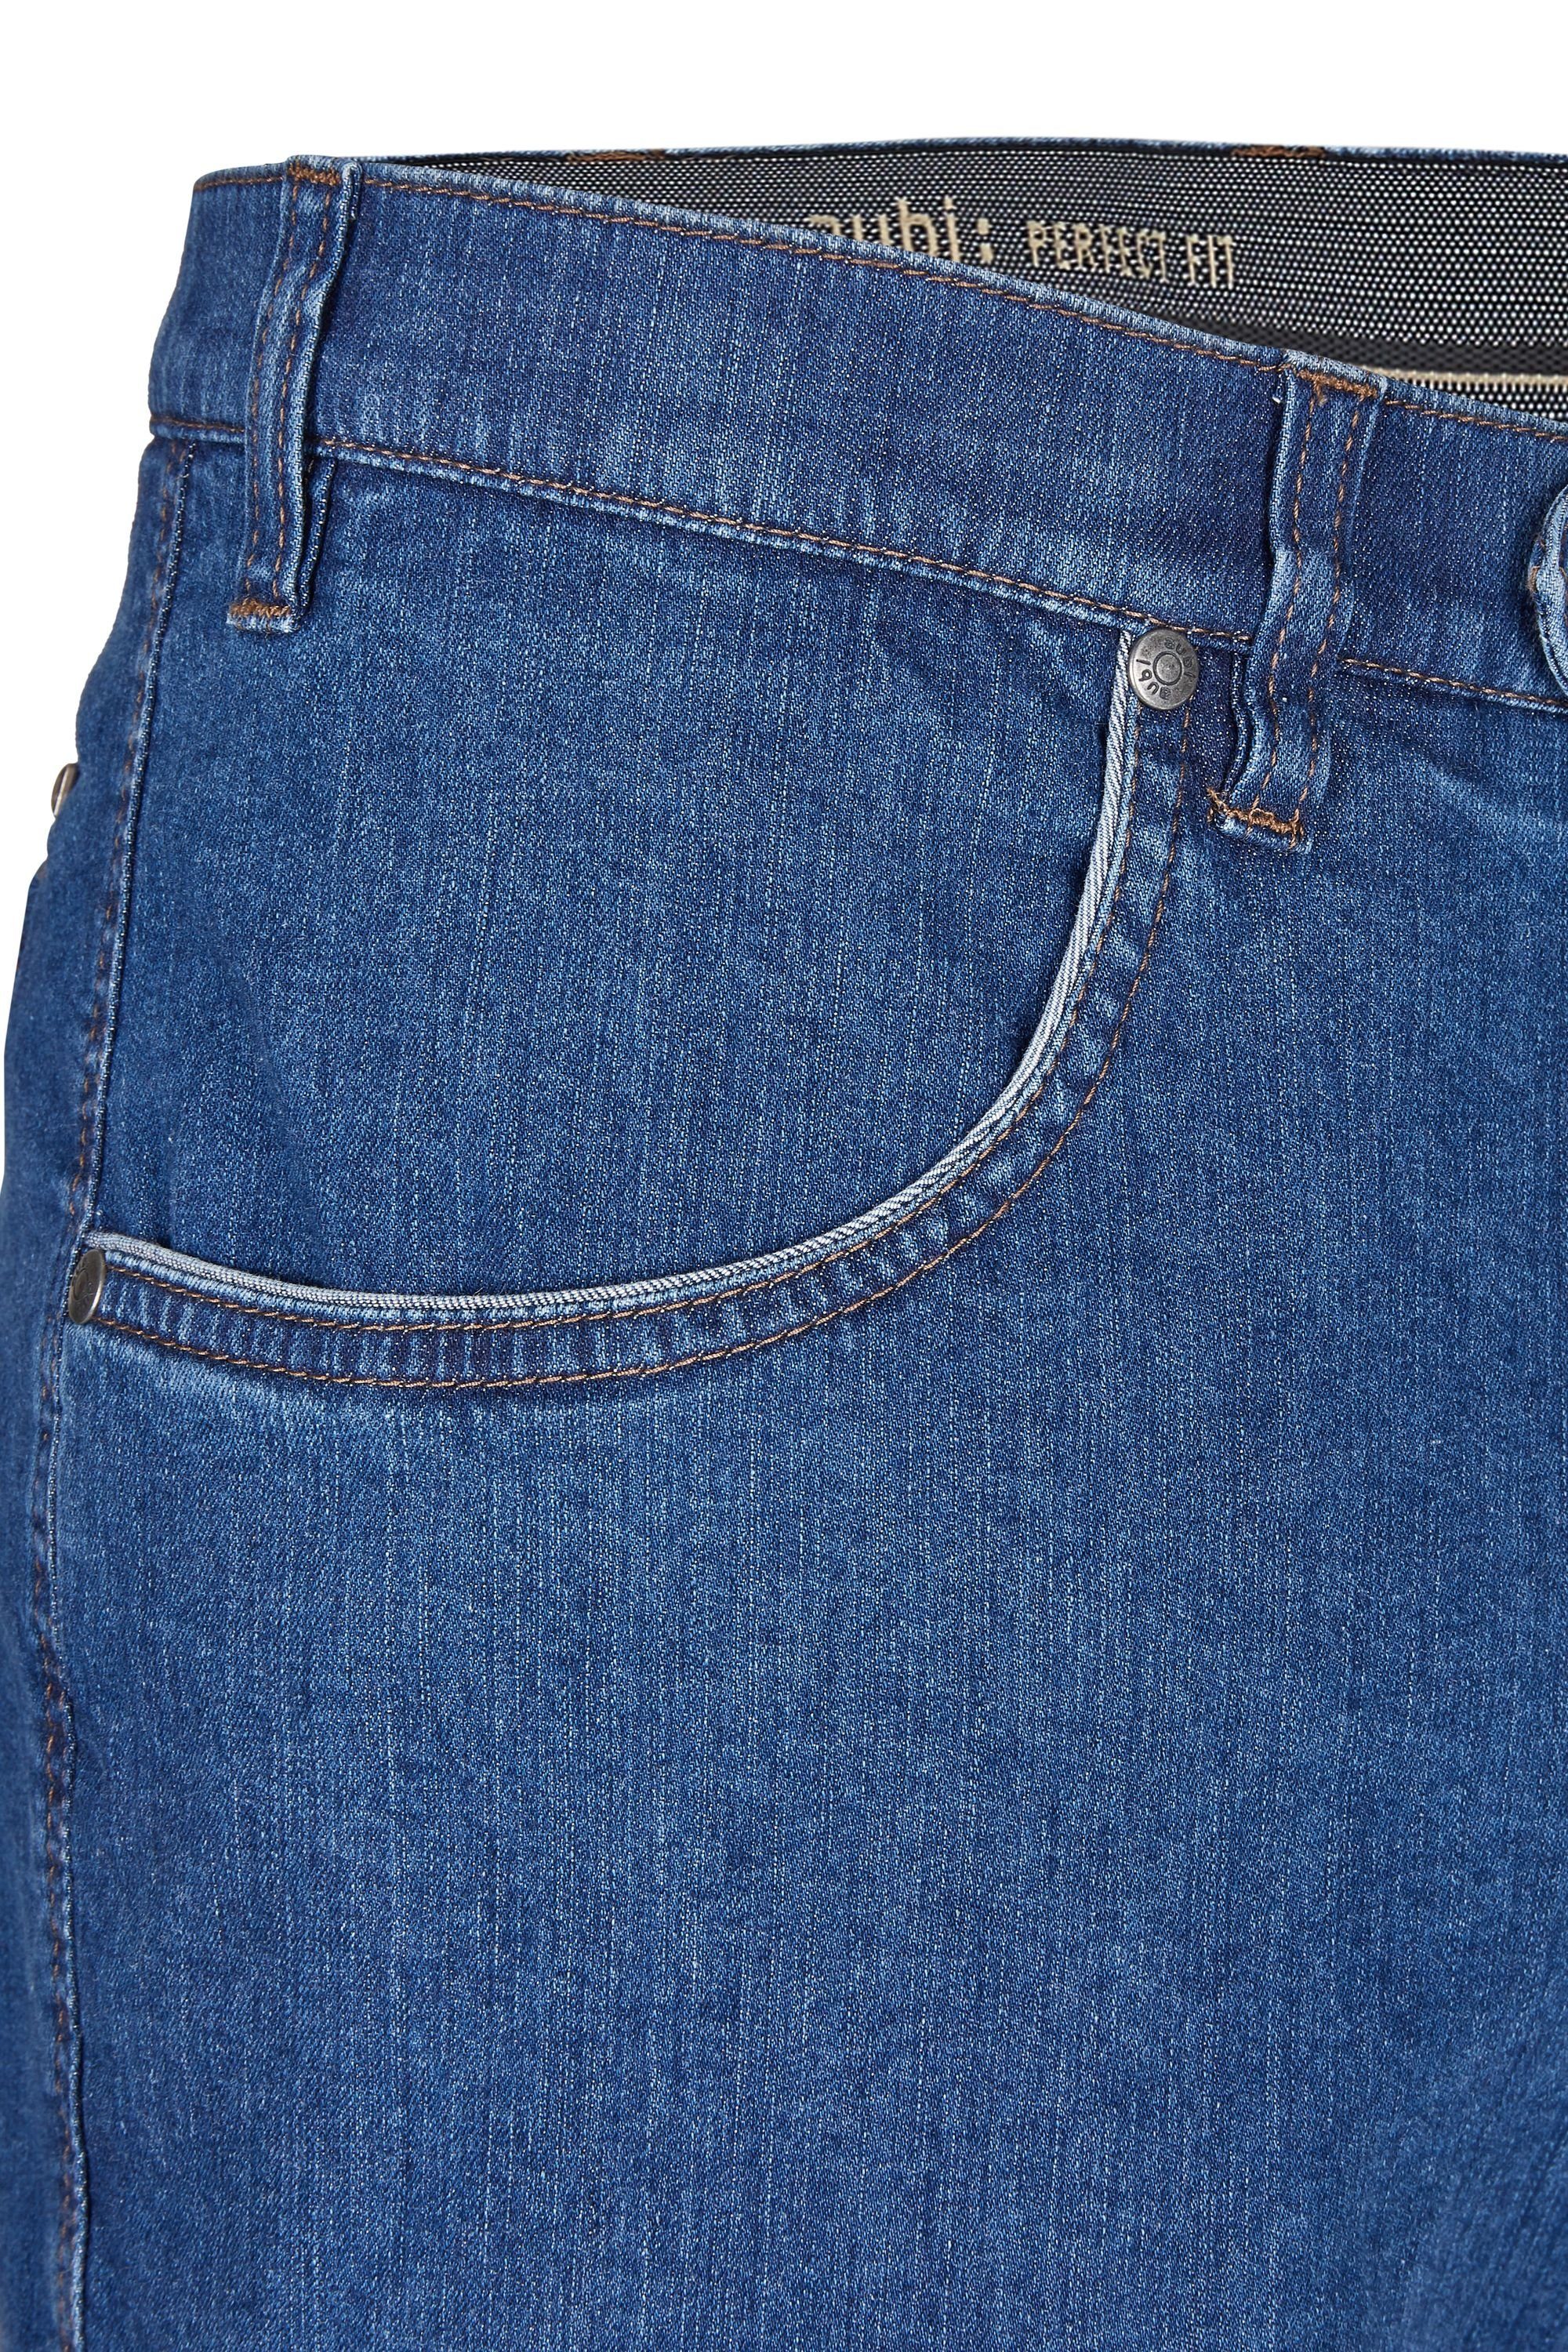 Cargo aus Stretch Sommer (46) aubi: 616 Fit aubi Modell High Perfect Bequeme Jeans Shorts Baumwolle Flex Herren stone Jeans